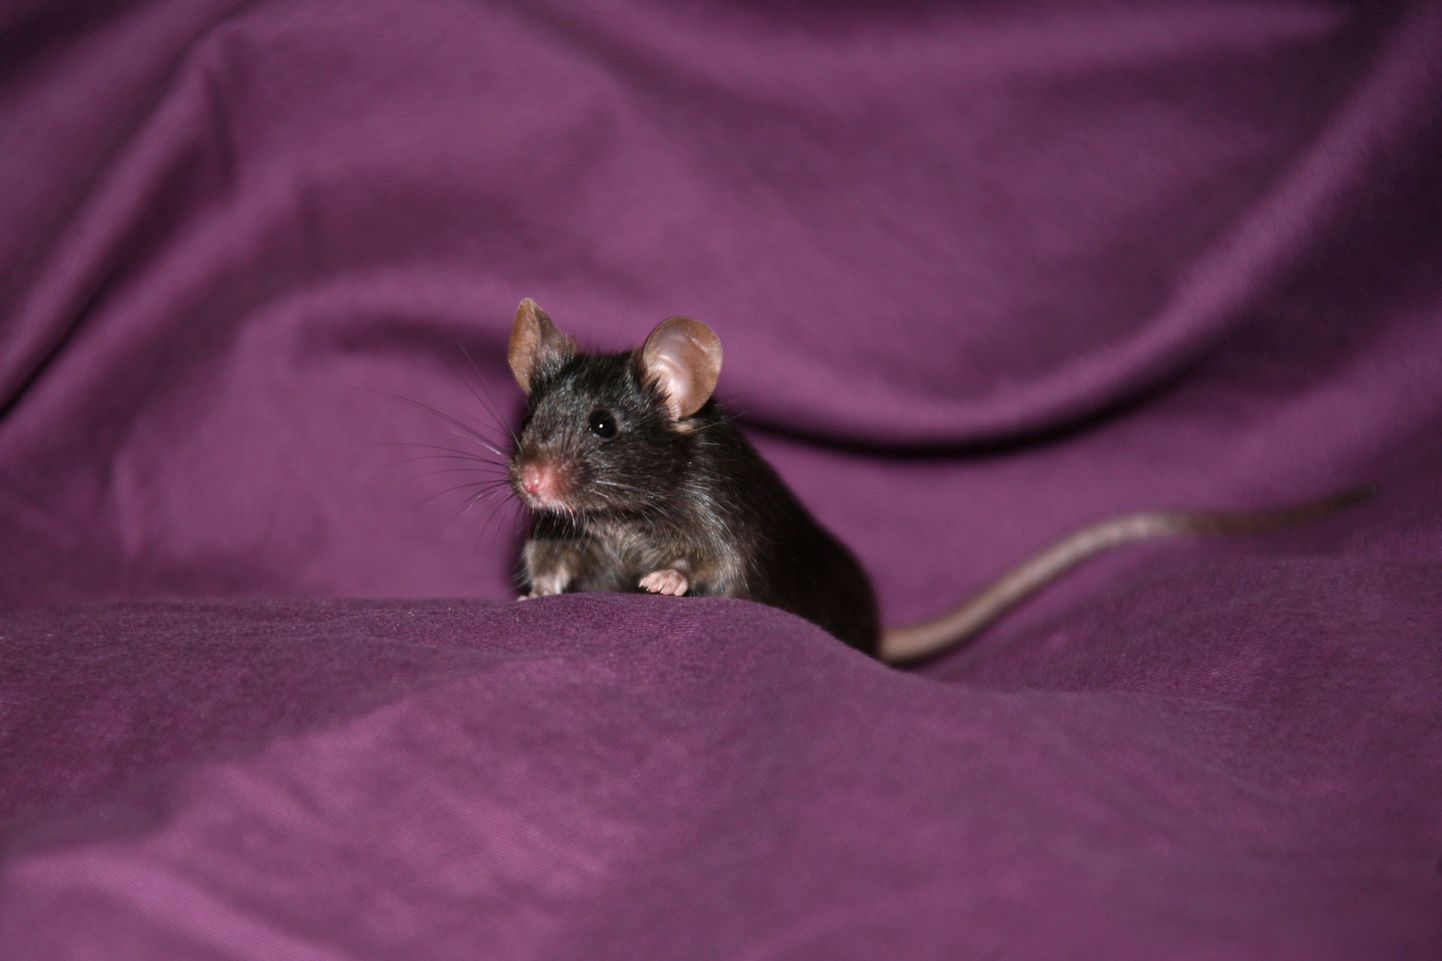 NASA teadlased panid hiired leviteerima